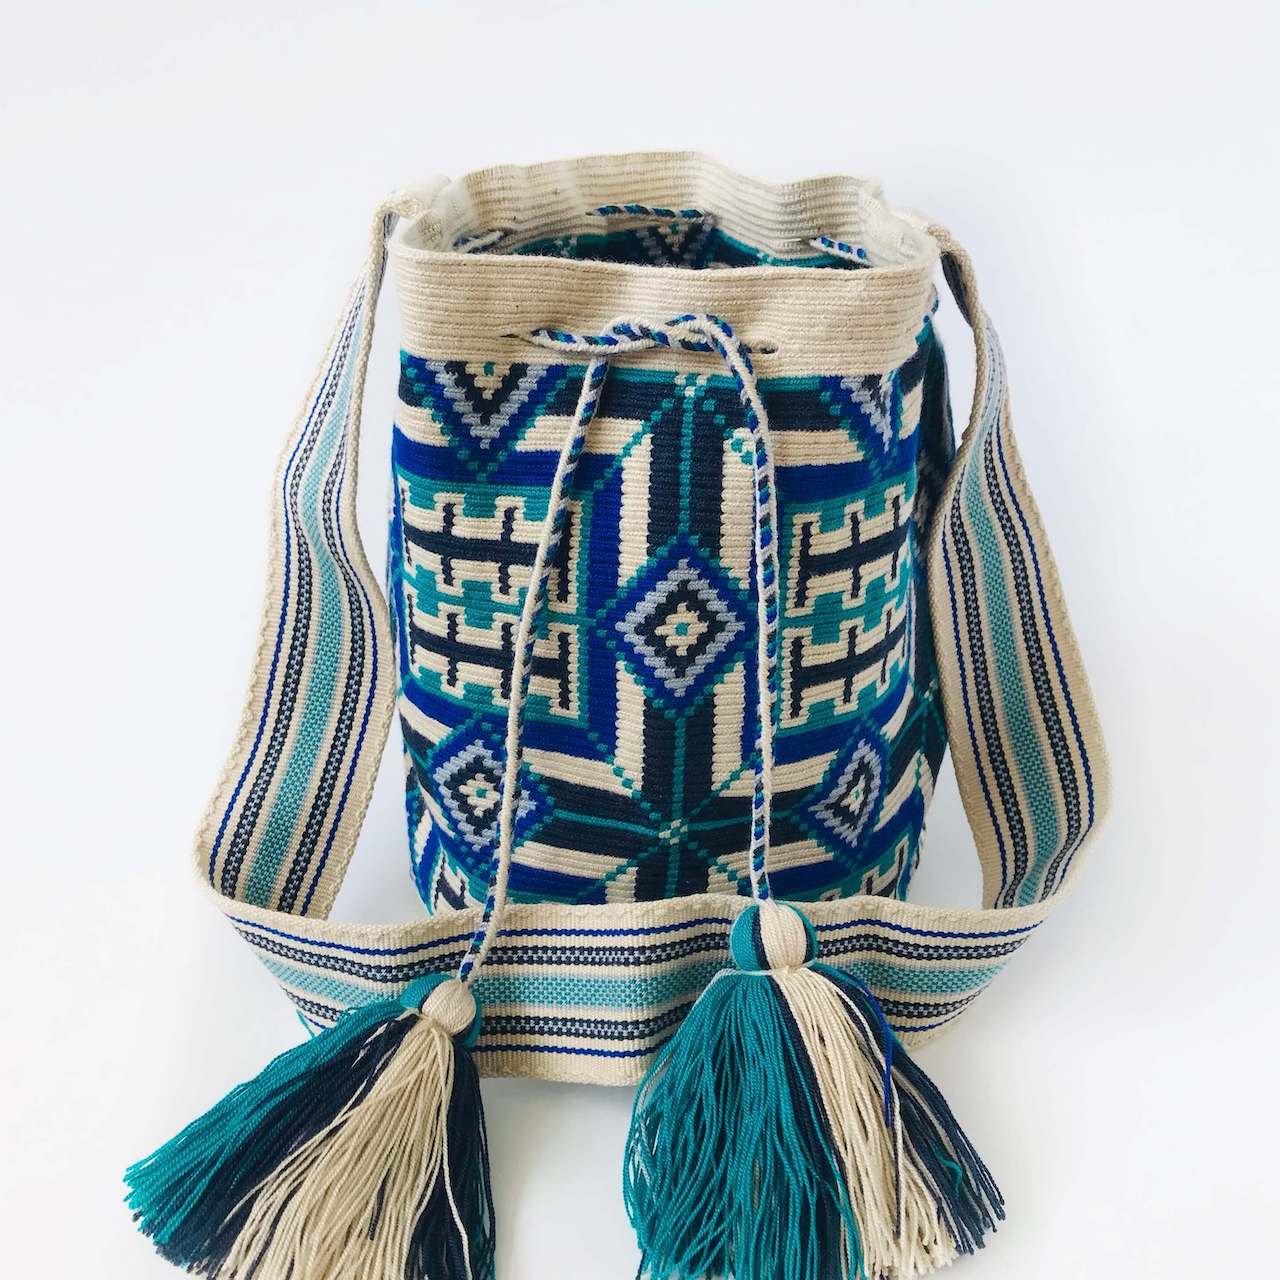 Ethnische Tasche aus Kolumbien